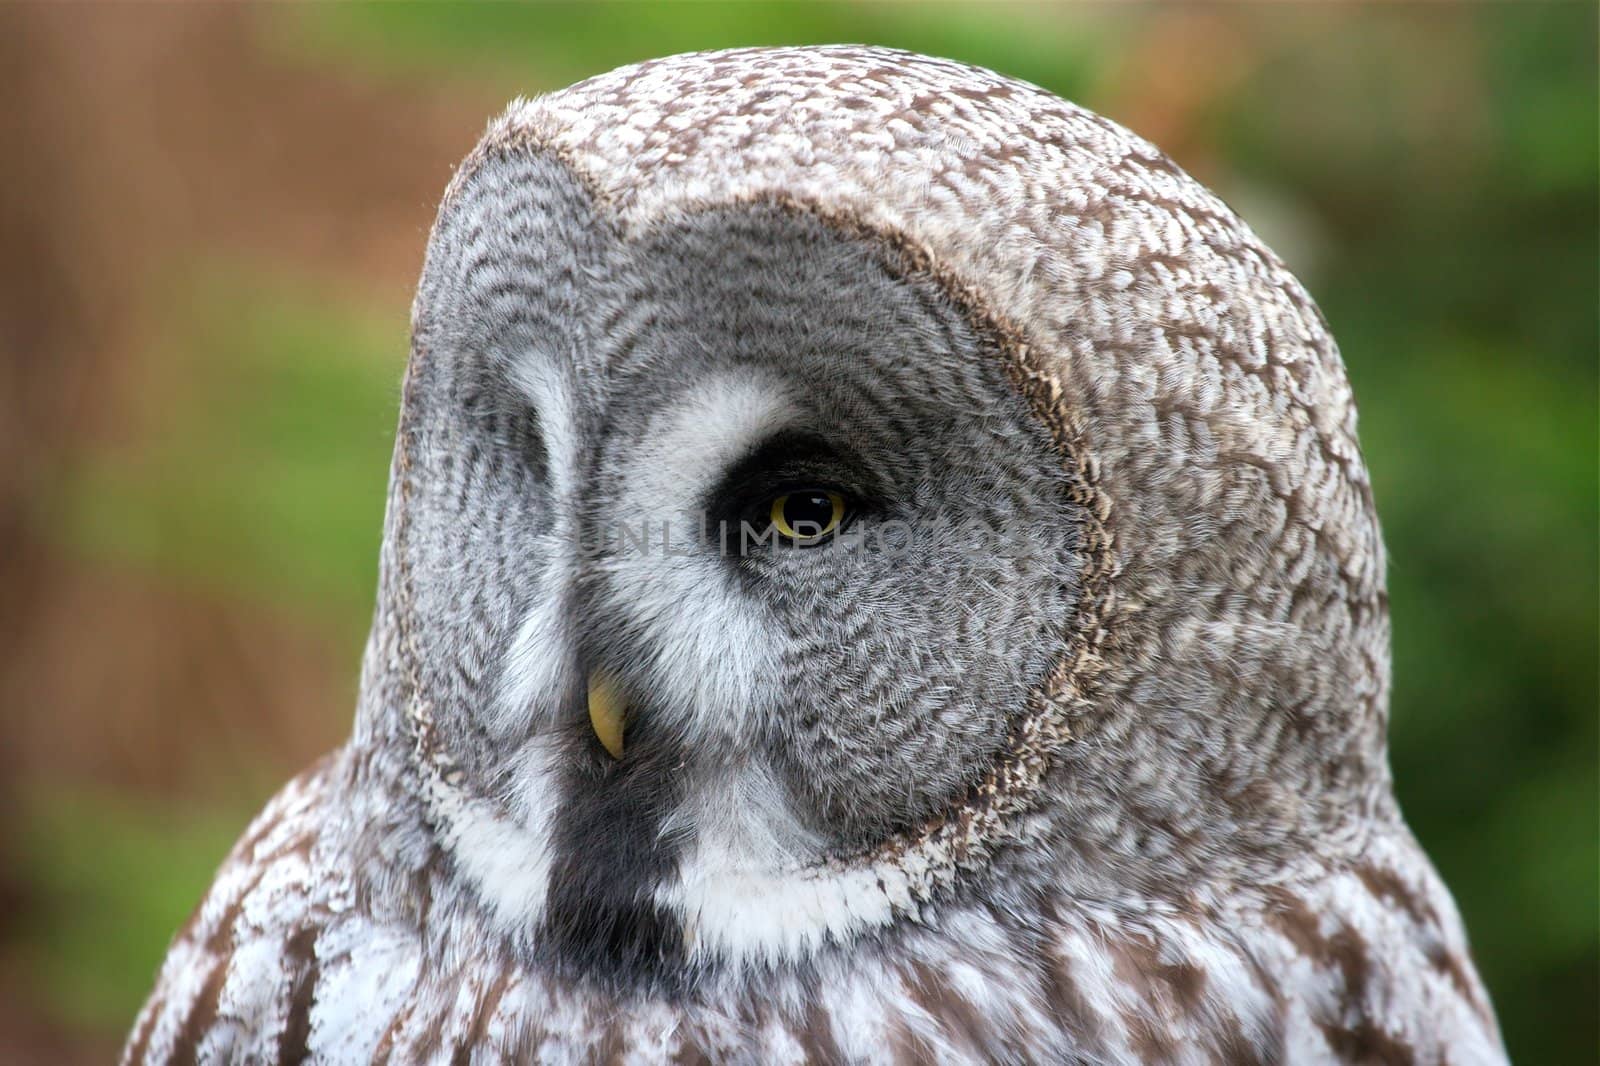 Owl head by Gudella